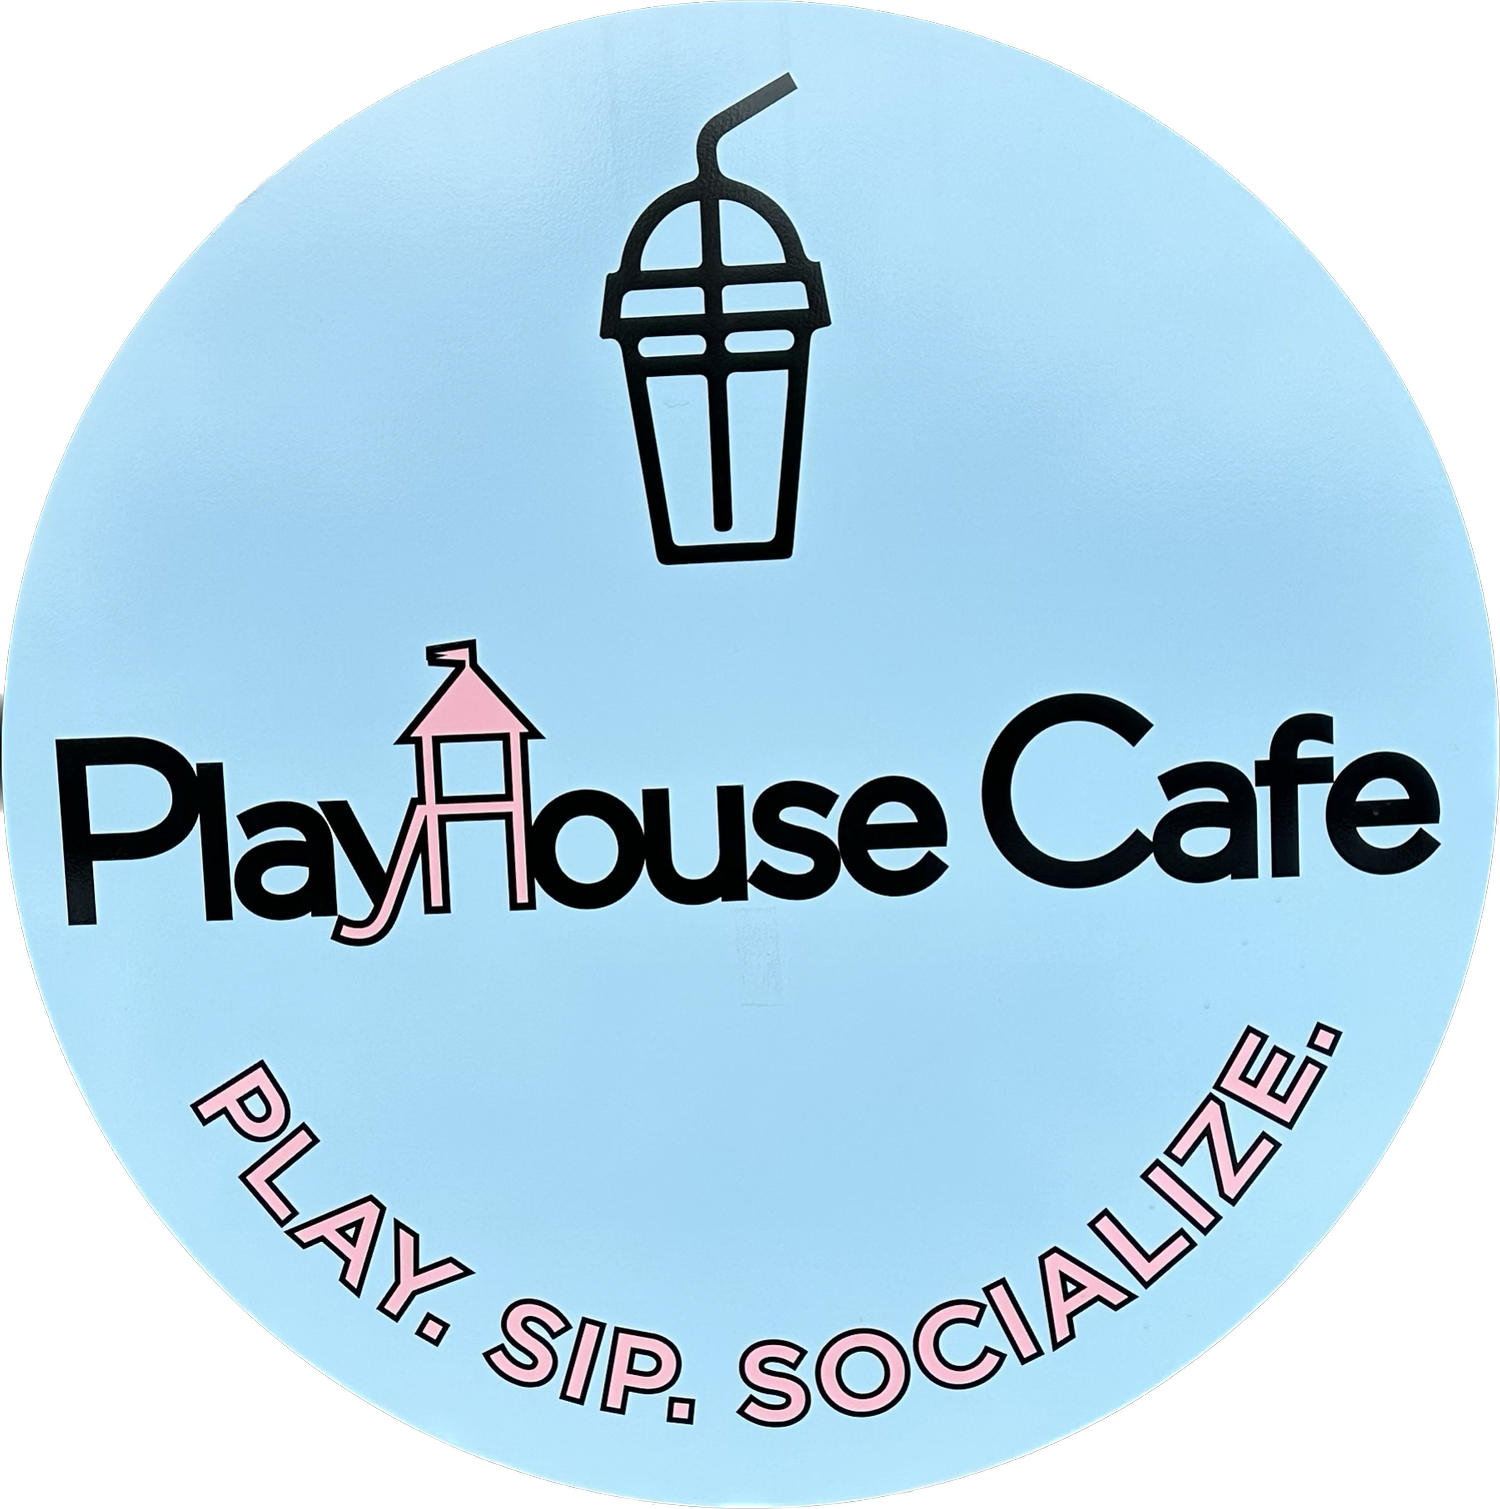 Playhouse Cafe